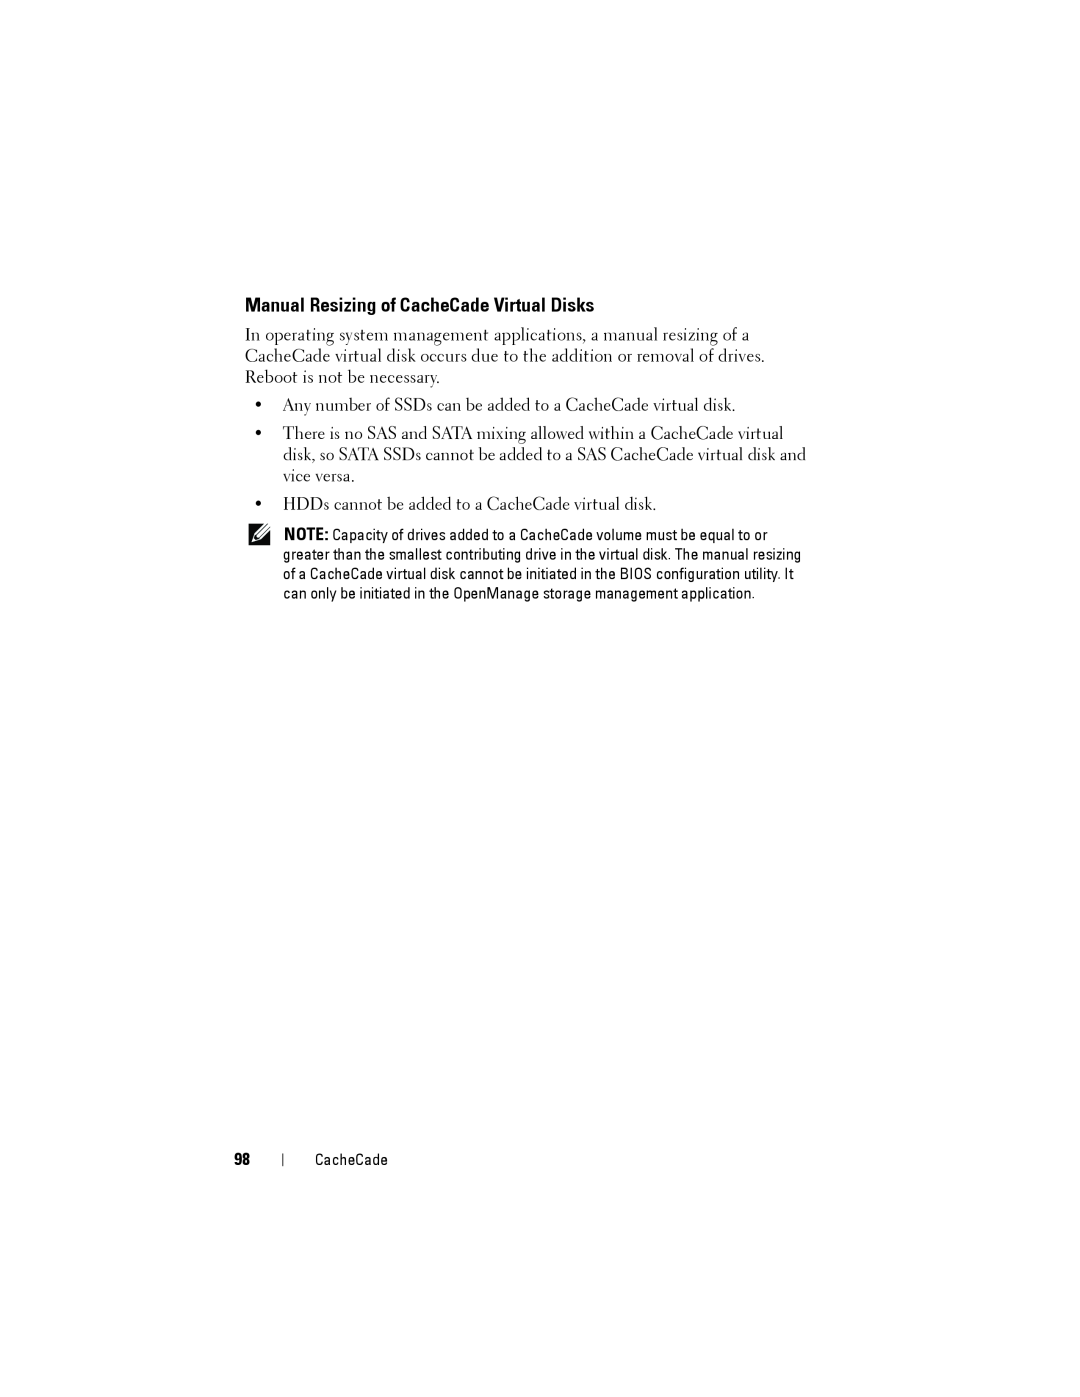 Dell H710P, H310, H810 manual Manual Resizing of CacheCade Virtual Disks 